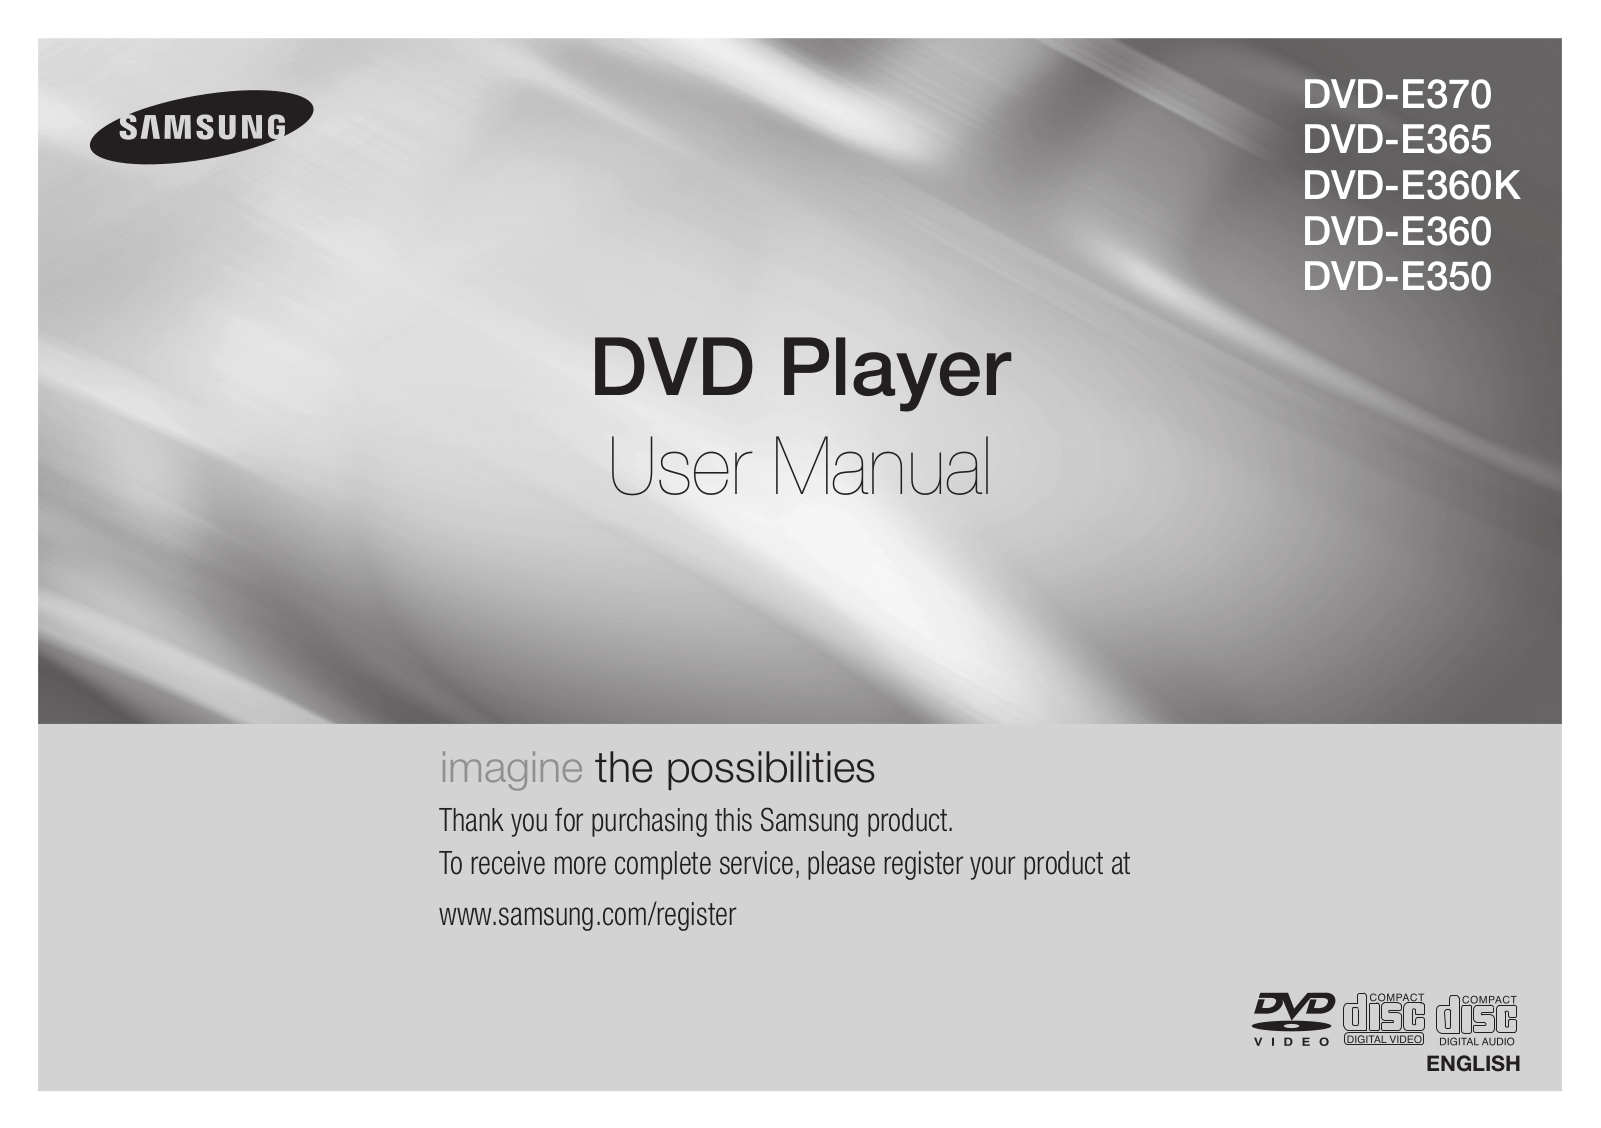 Philips DVD-E350, DVD-E360, DVD-E365, DVD-E370, DVD-E360K User Manual